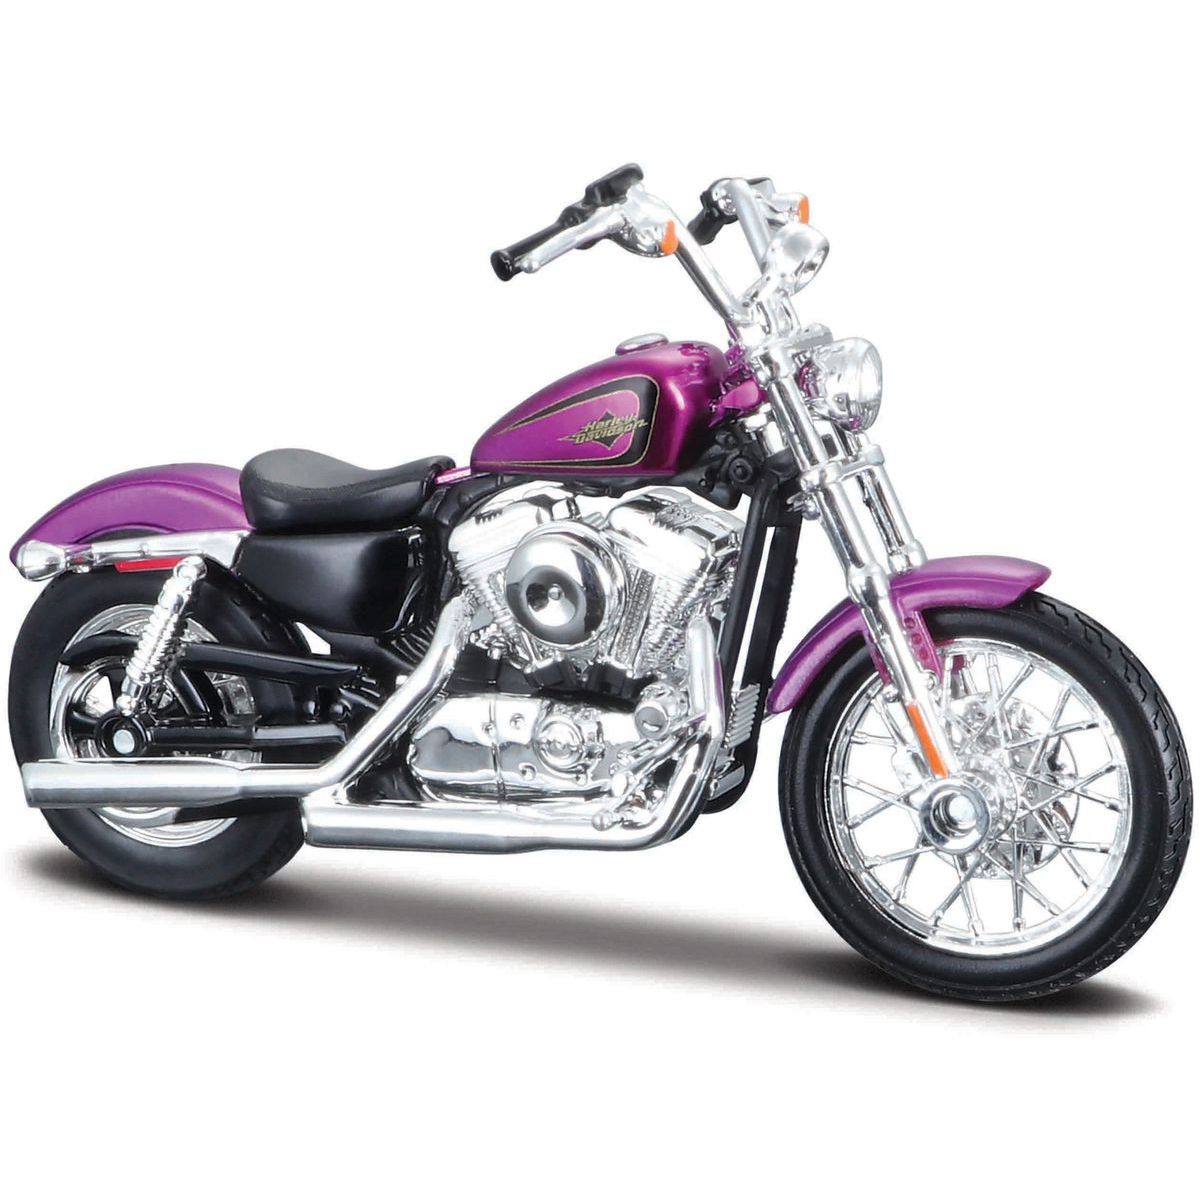 Maisto HD - Motocykl - 2013 XL 1200V Seventy-Two™, 1 : 18